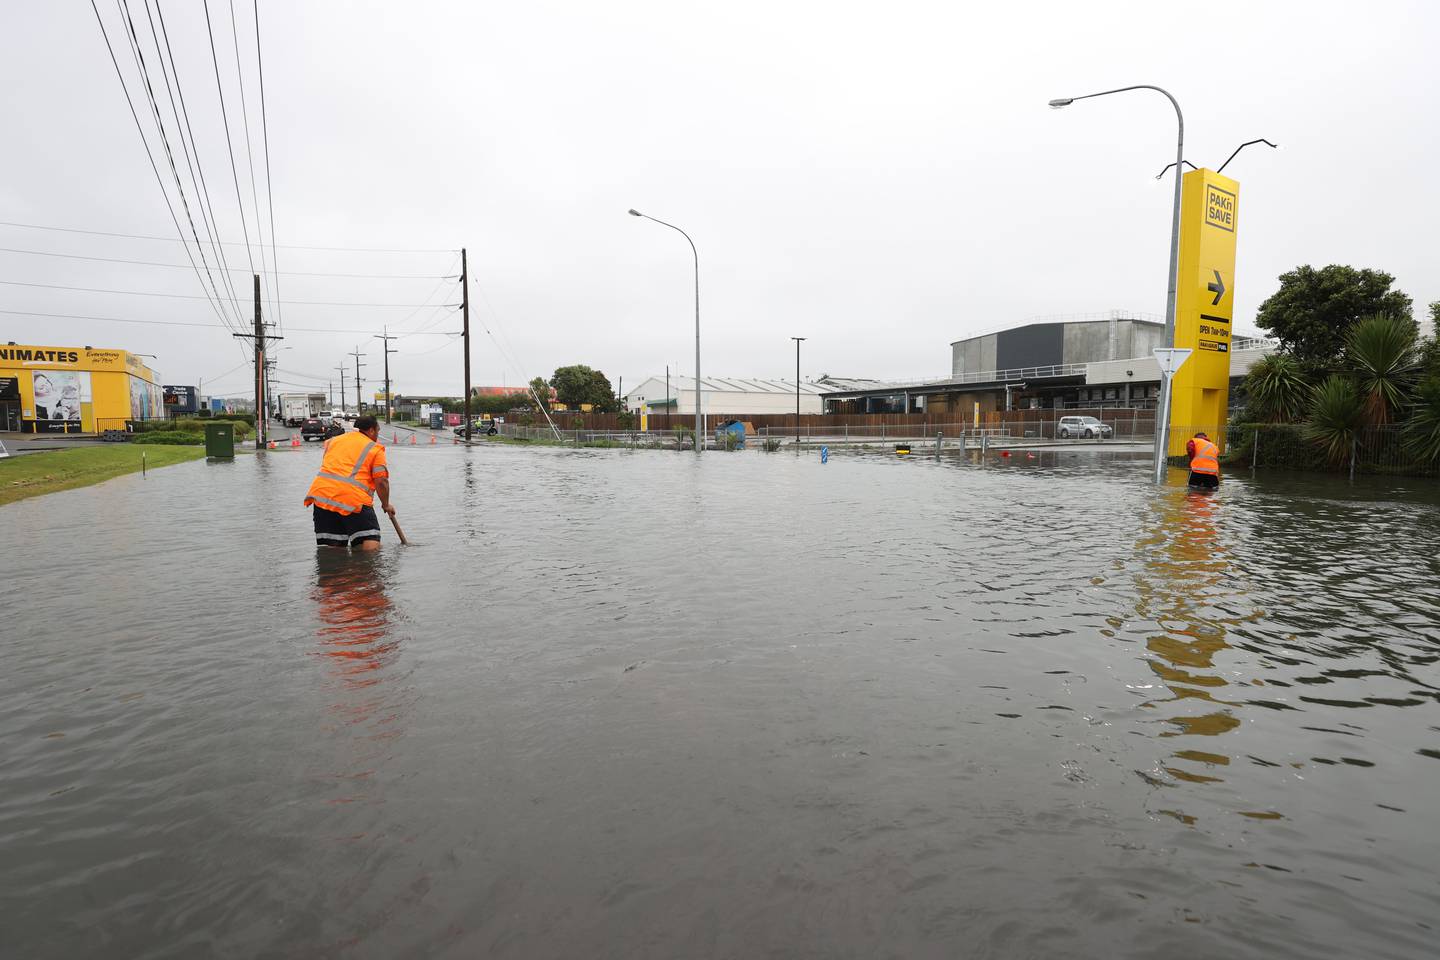 奥克兰 Wairau Valley 的 Porana Rd 发生洪水。 照片/布雷特·菲布斯